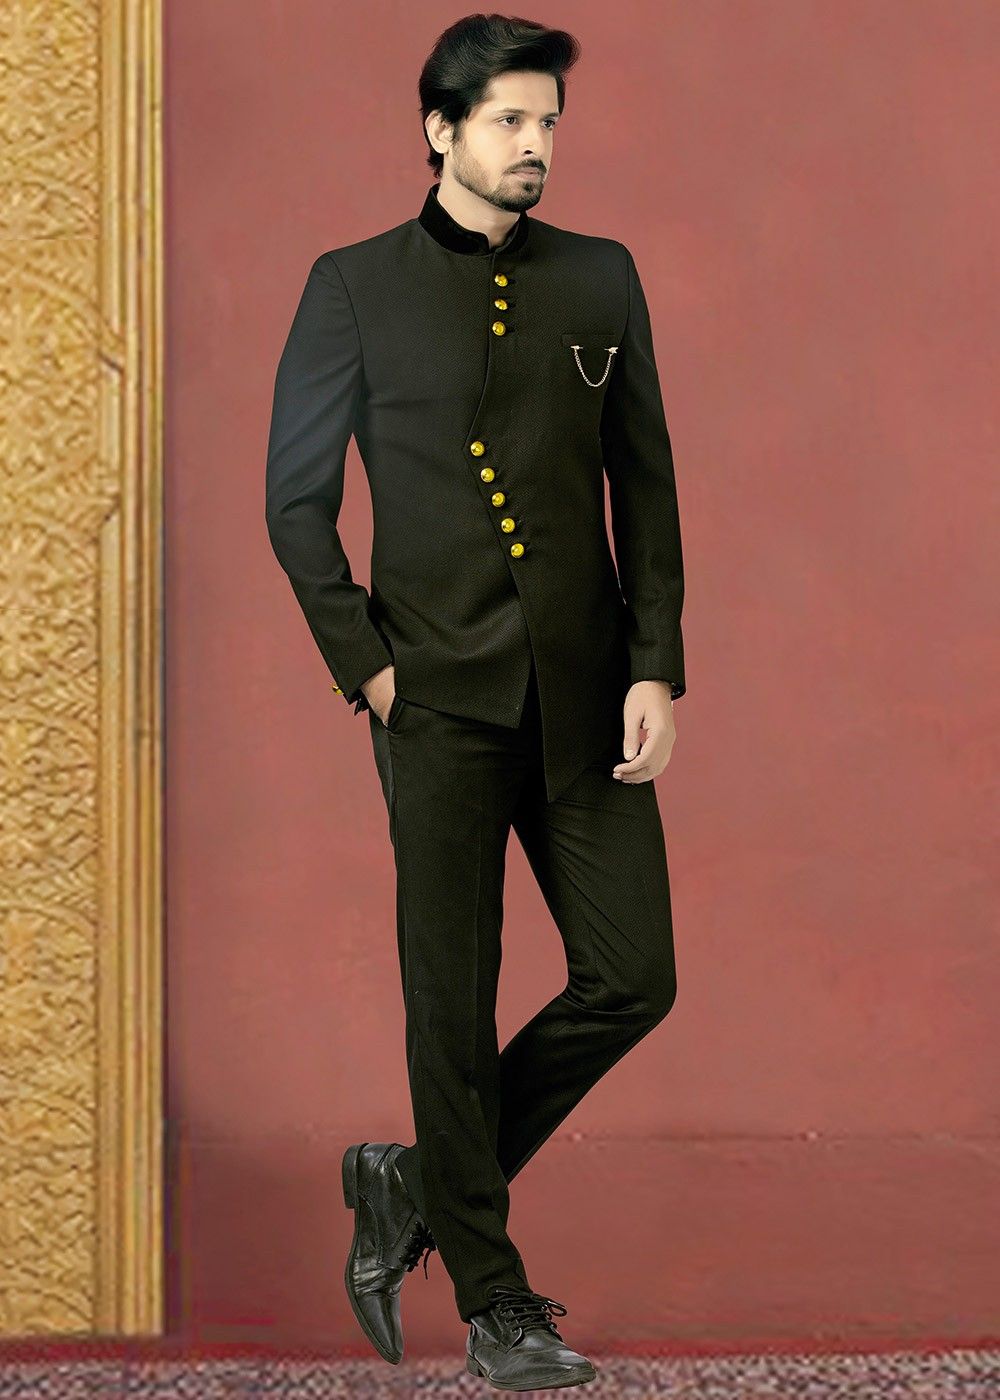 Black Asymmetric Rayon Bandhgala Jodhpuri Suit Latest 298mw02 black asymmetric rayon bandhgala jodhpuri suit